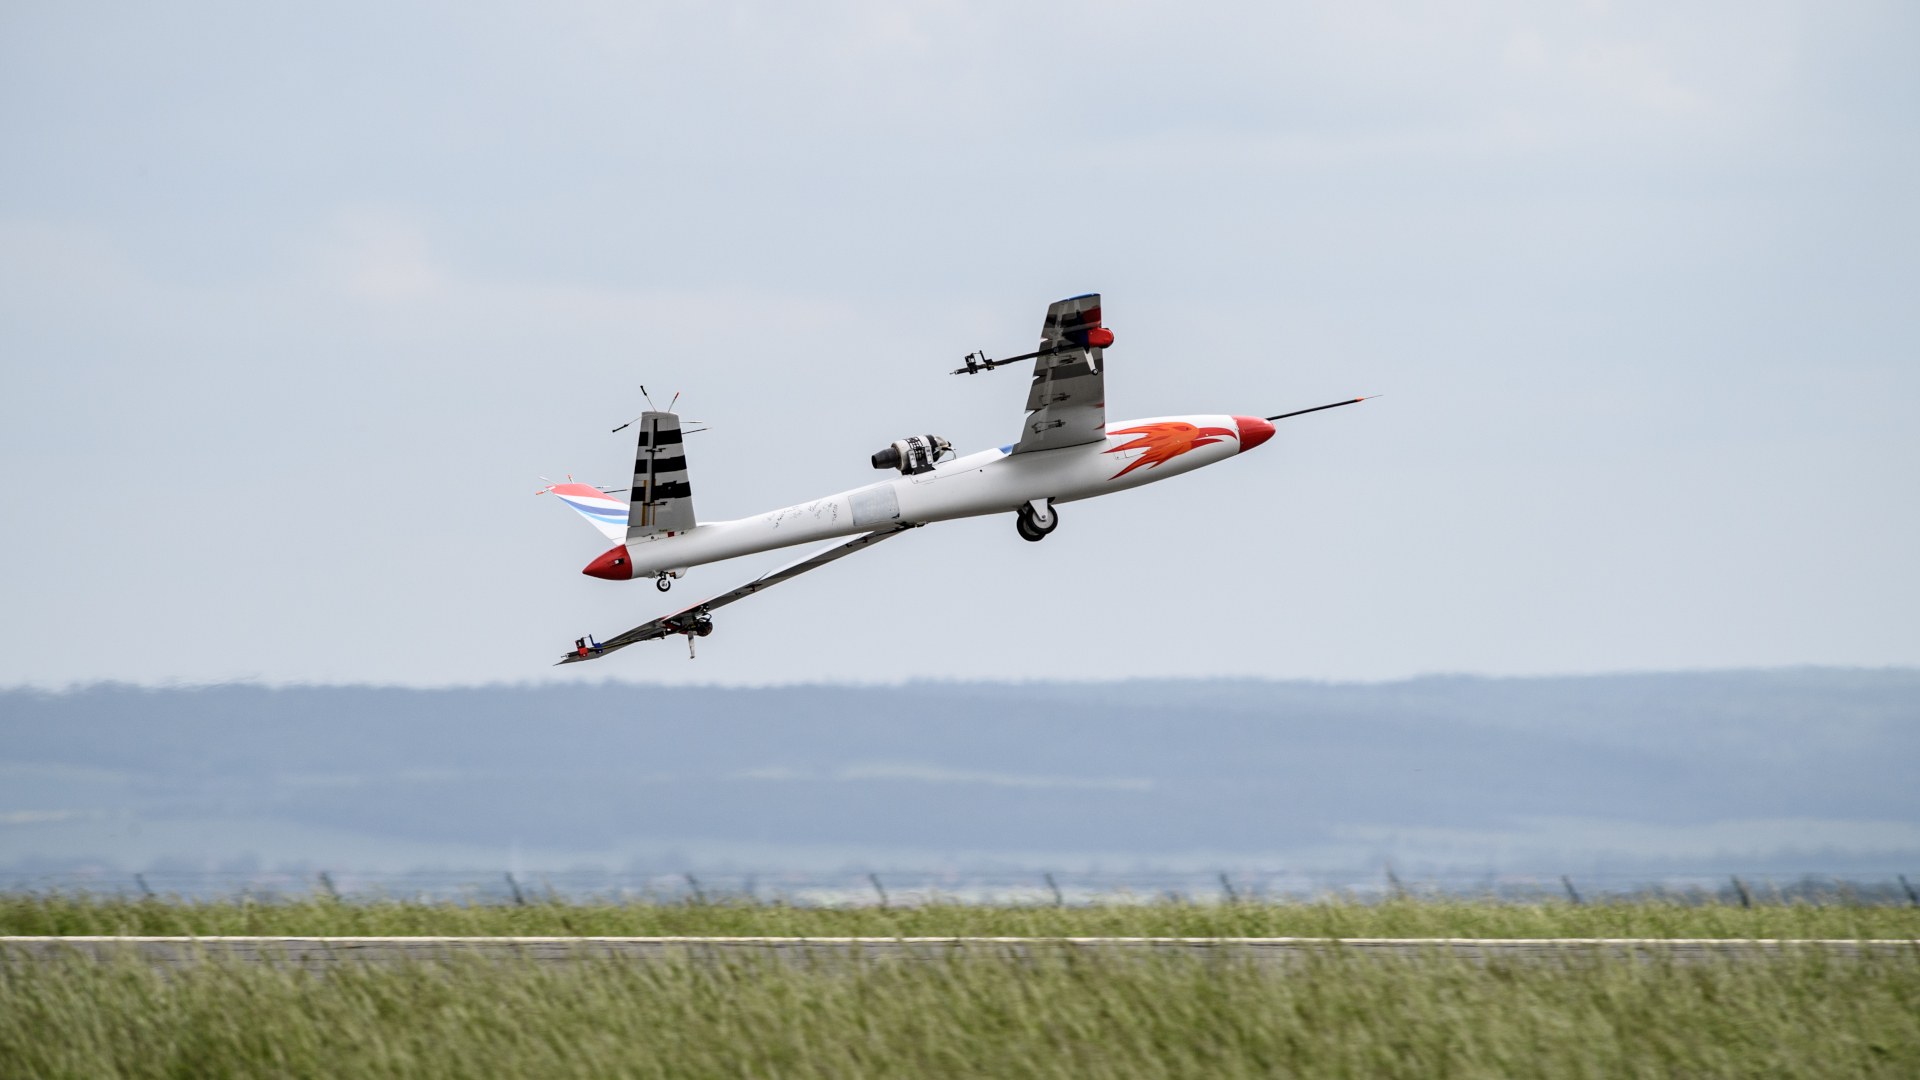 UAV with onboard active flutter suppression system